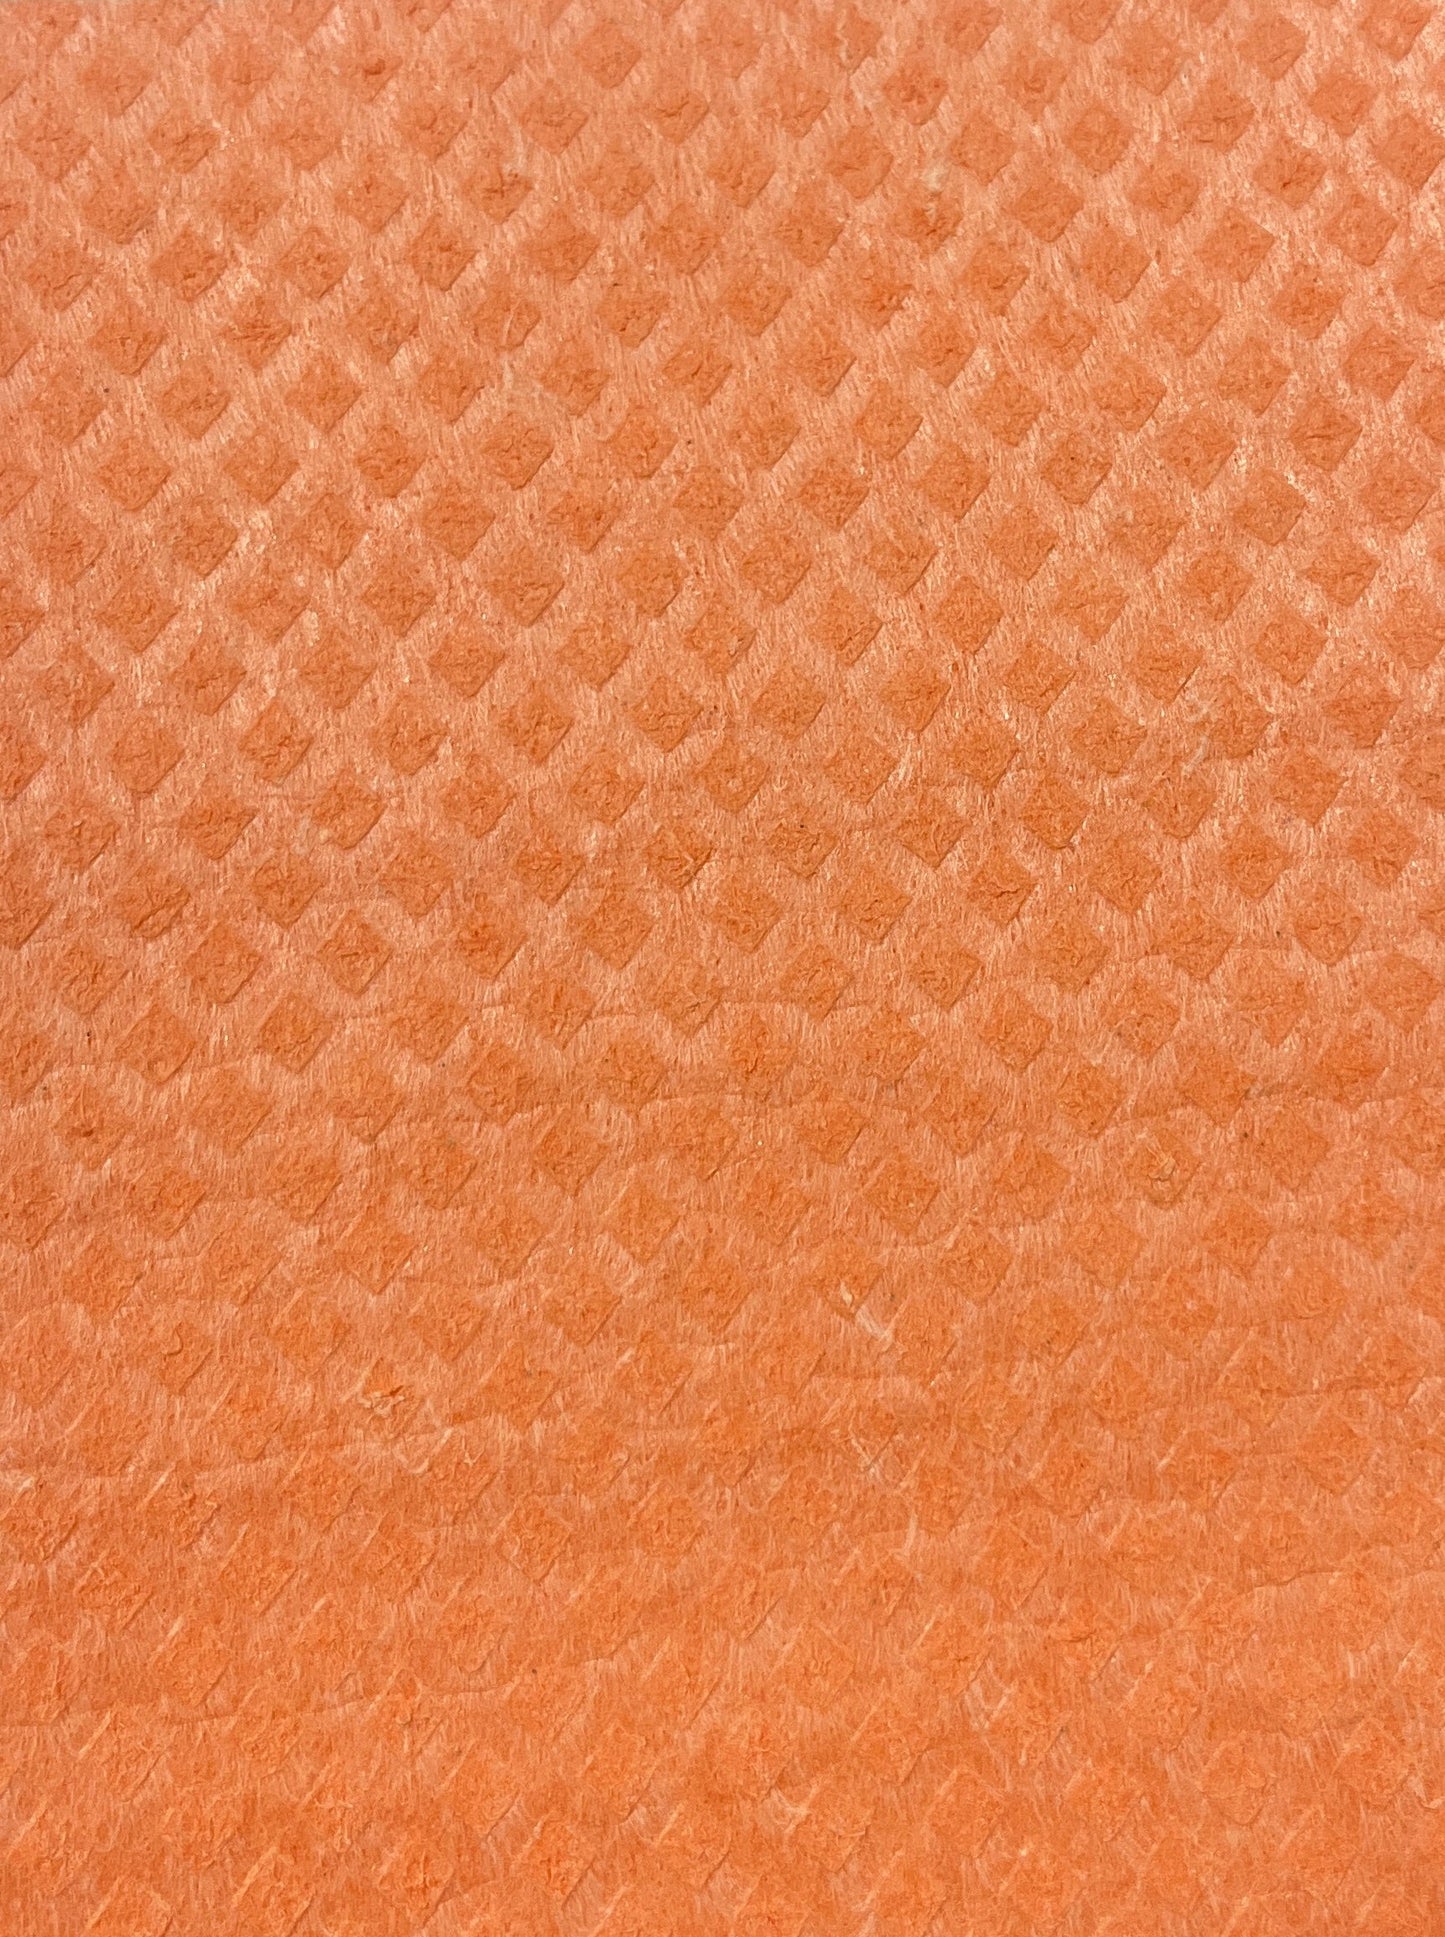 Swedish Cloth Swedish Sponge Cloth | Dishcloth Unpaper Towel Paper Baby Napkin | 100% Compostable | Zero Waste Kitchen